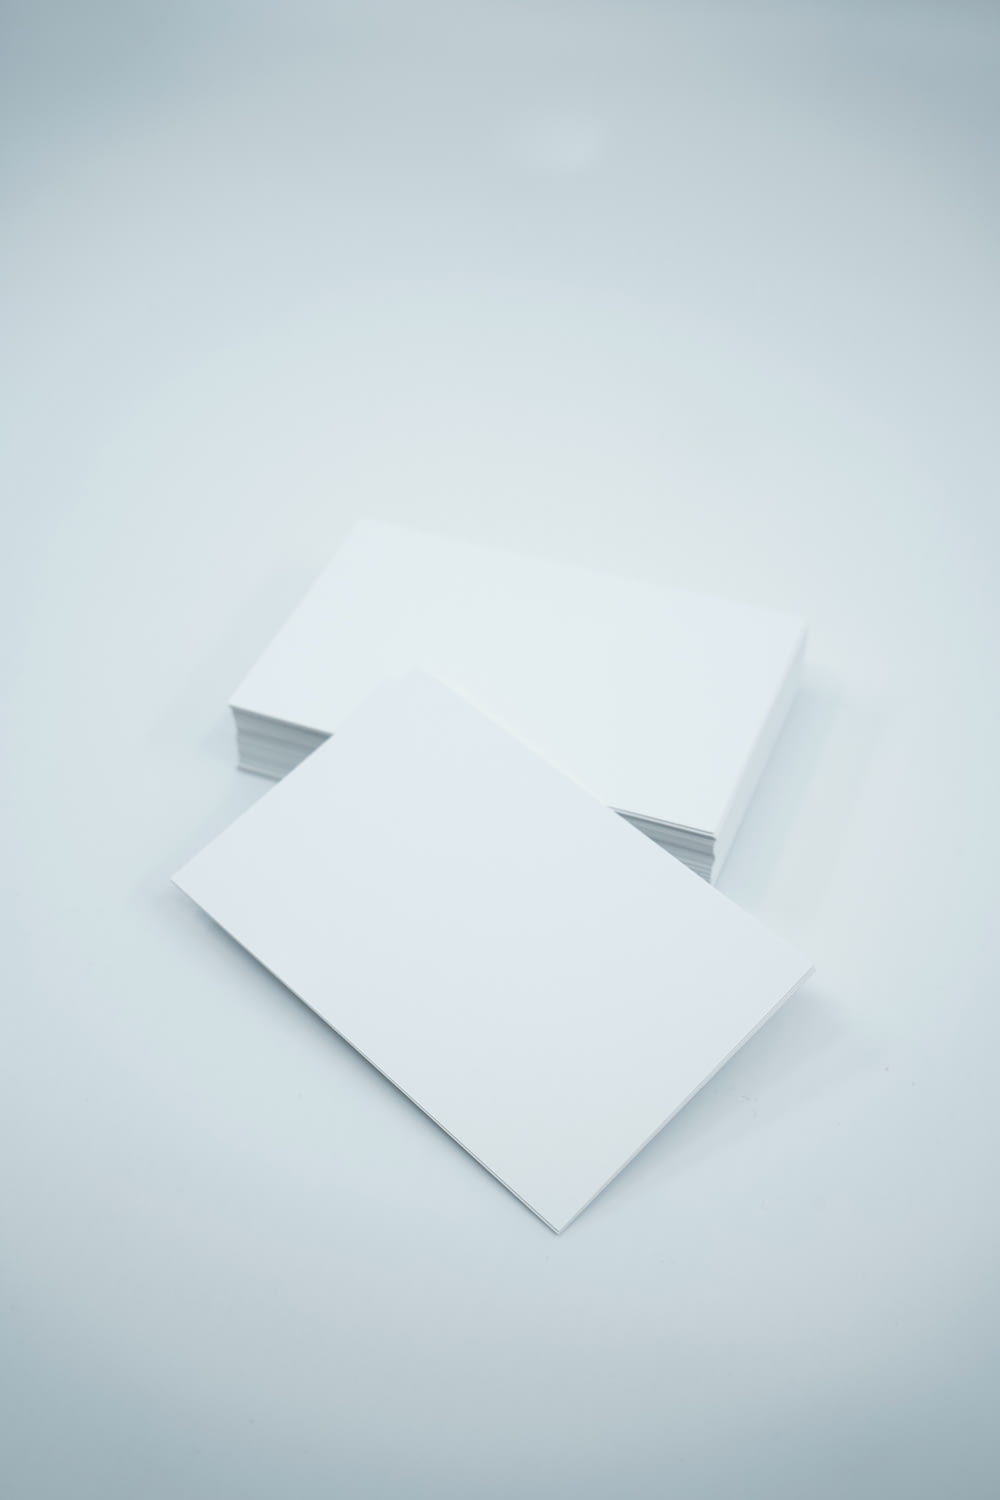 deux feuilles de papier vierges sur fond blanc